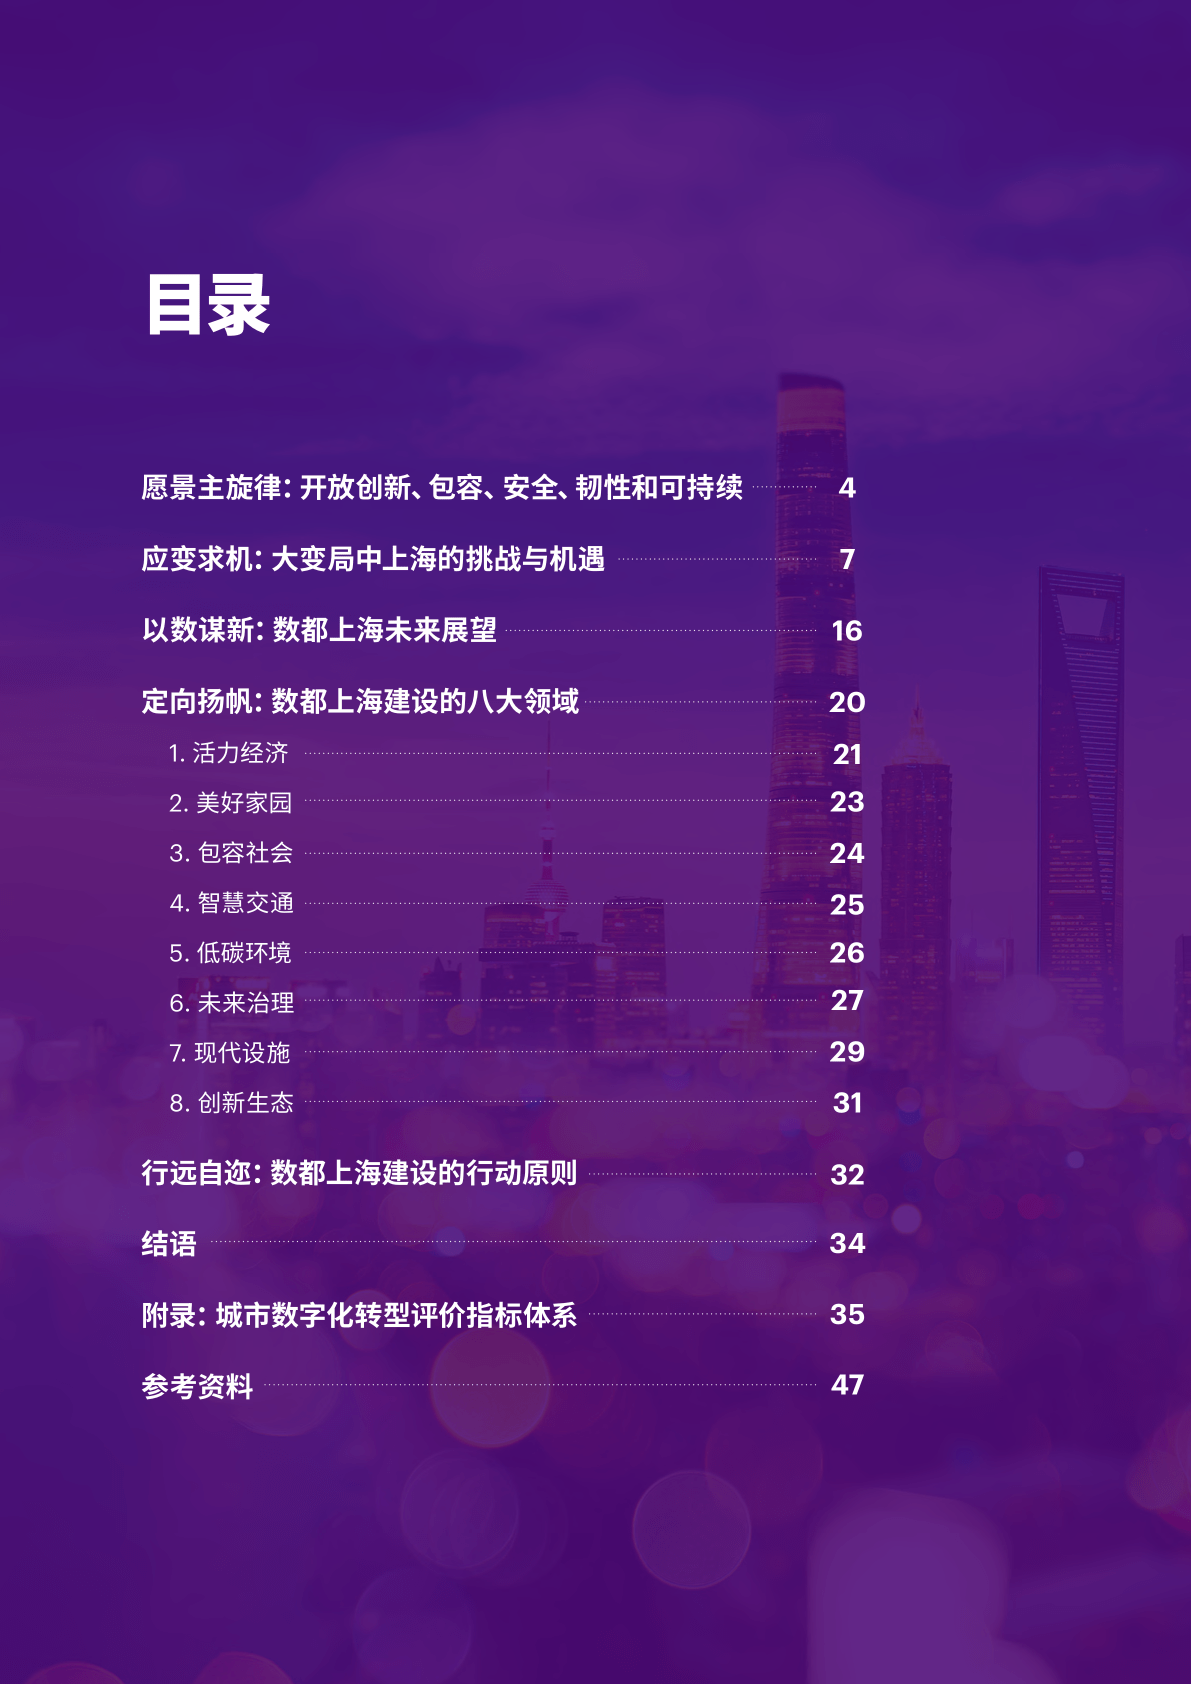 数都上海2035-上海市城市数字化转型应用促进中心(附下载)